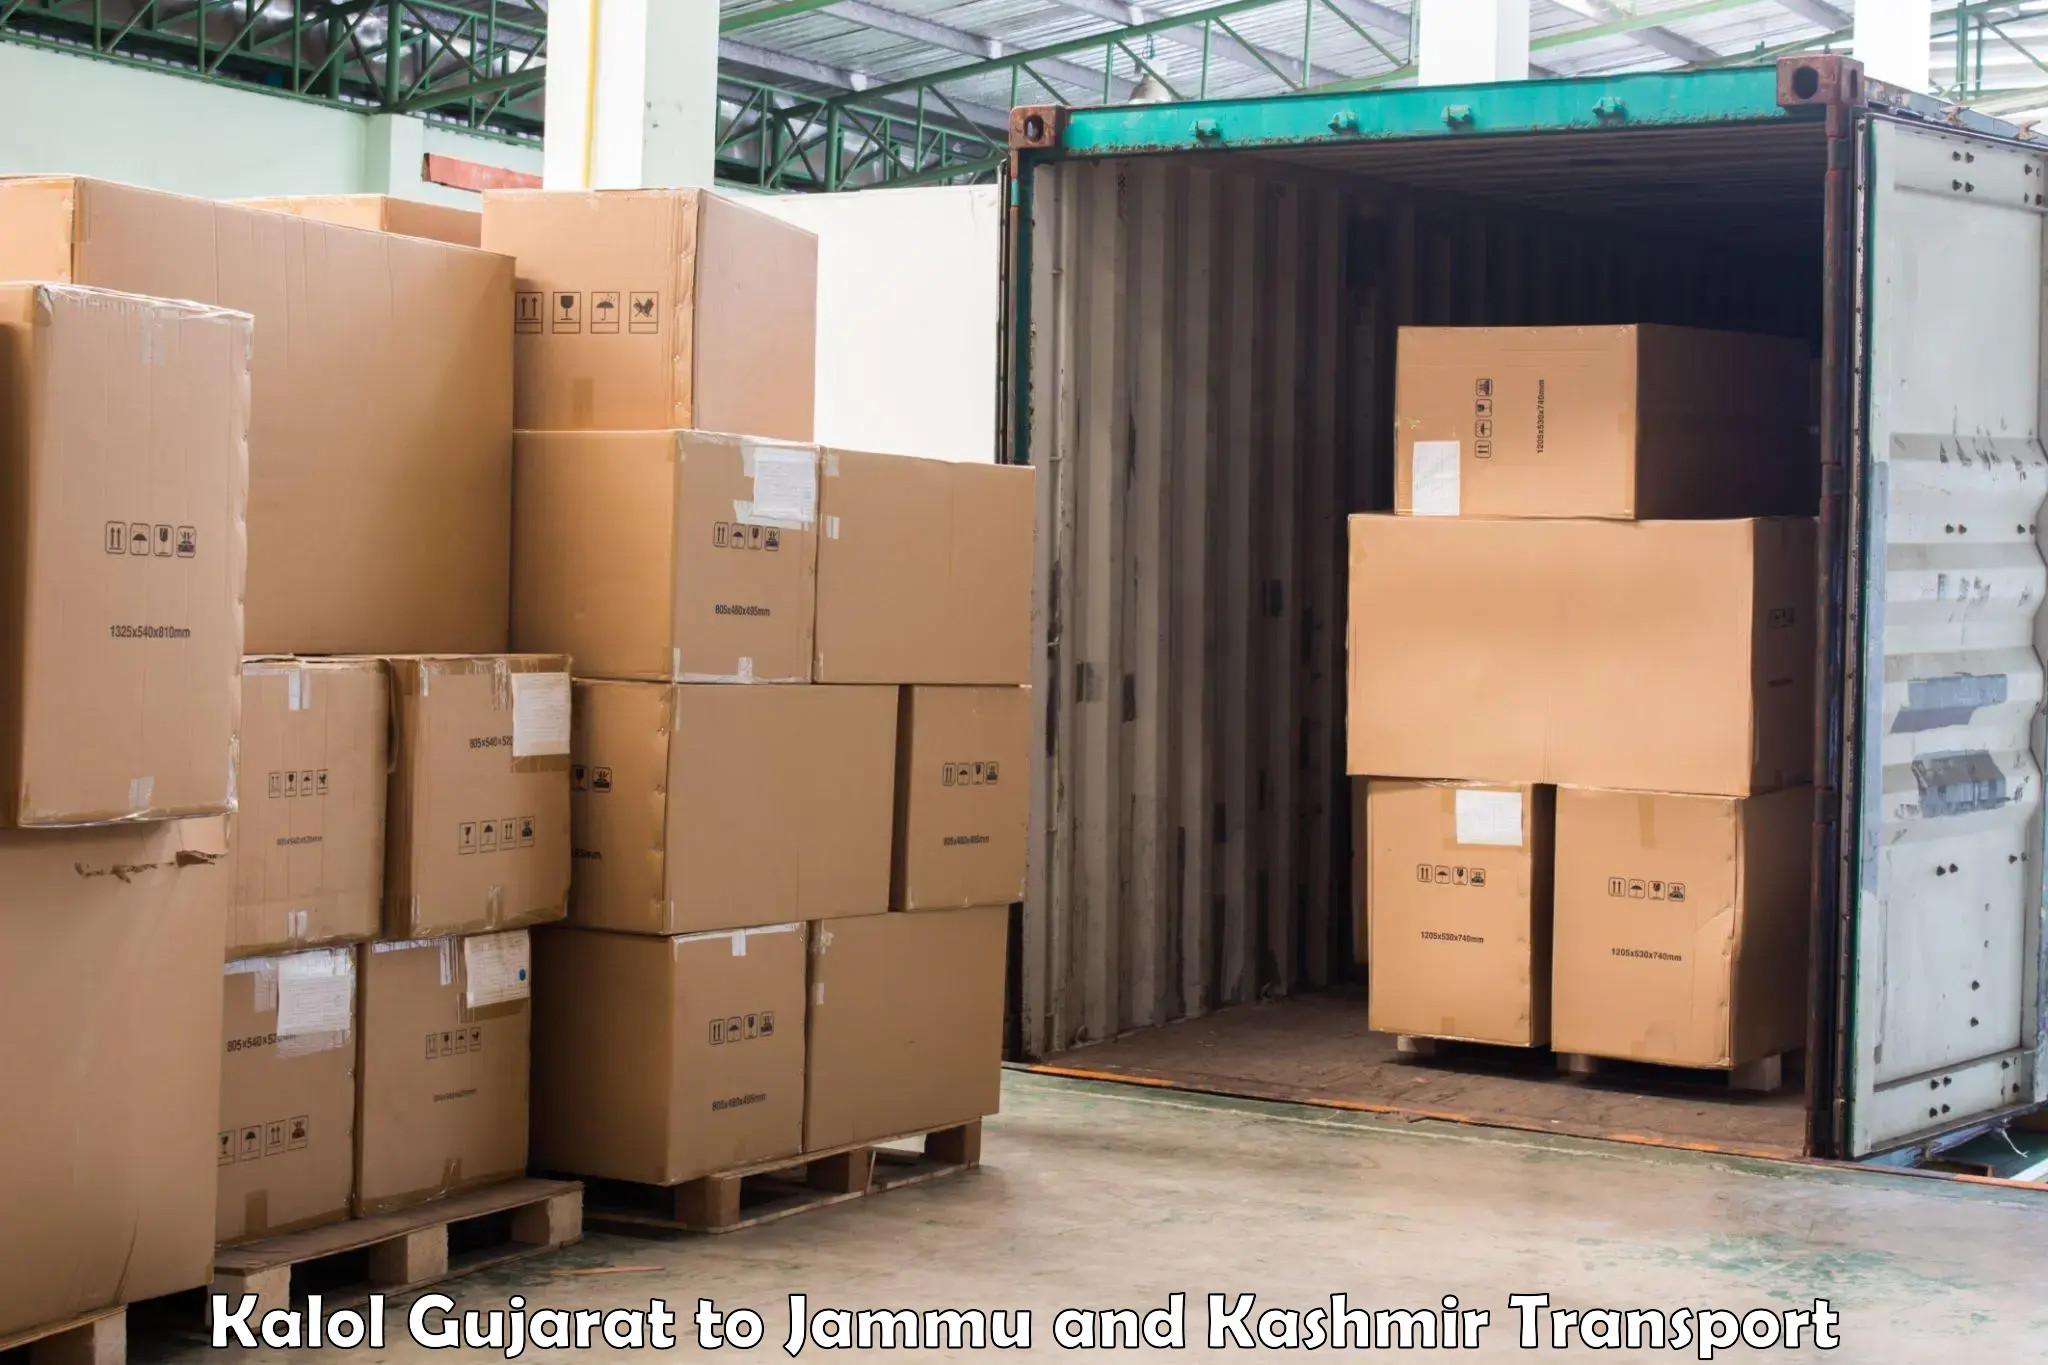 Furniture transport service Kalol Gujarat to IIT Jammu